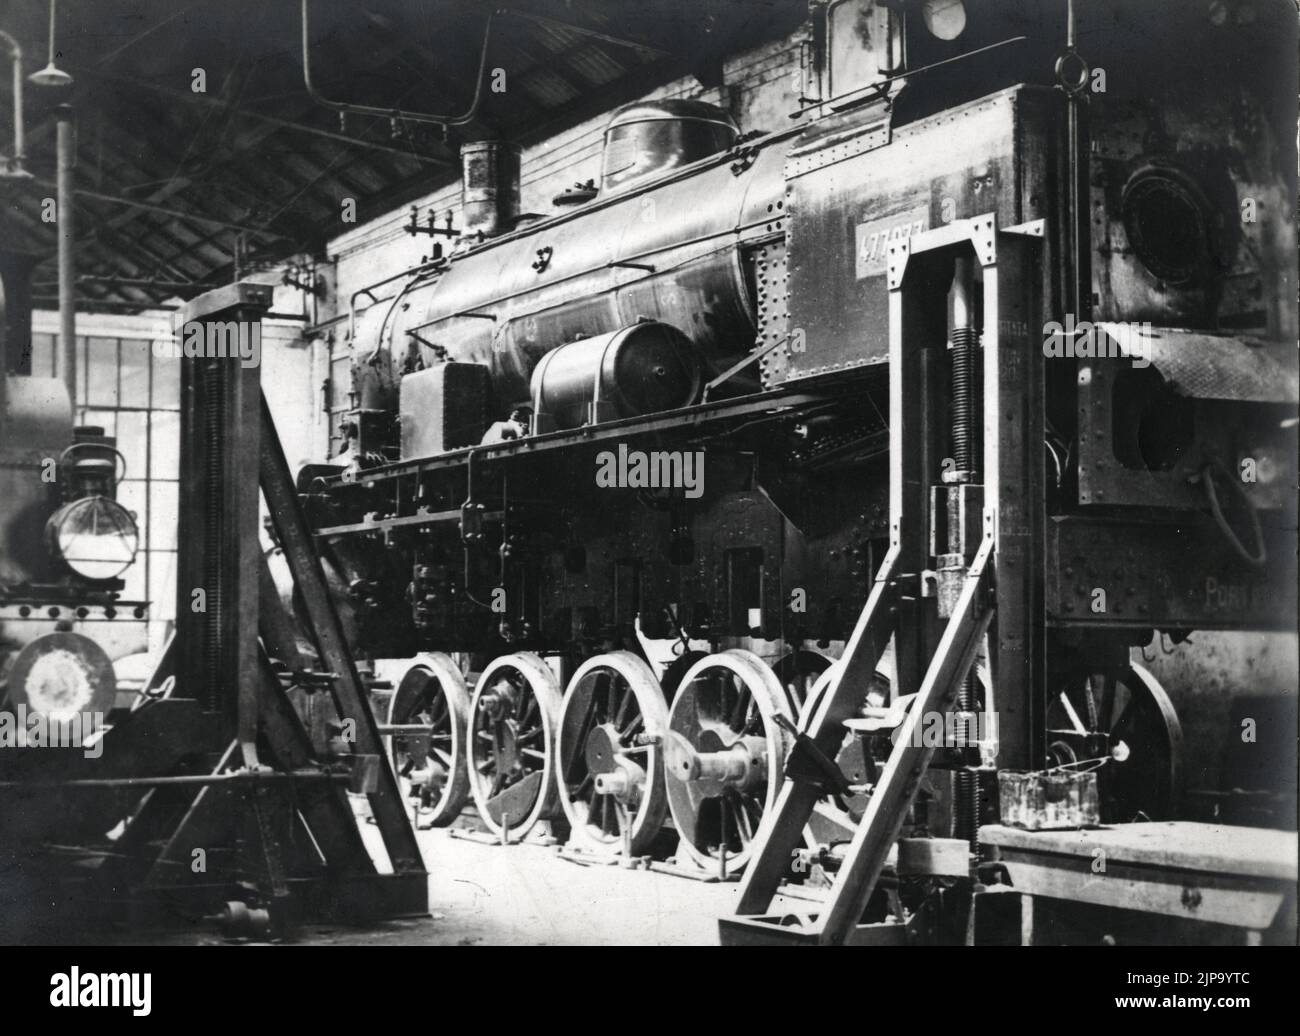 Treni e Tram - Locomotiva gruppo 477 austroungarica che le FS acquisirono come bottino di guerra. Stock Photo